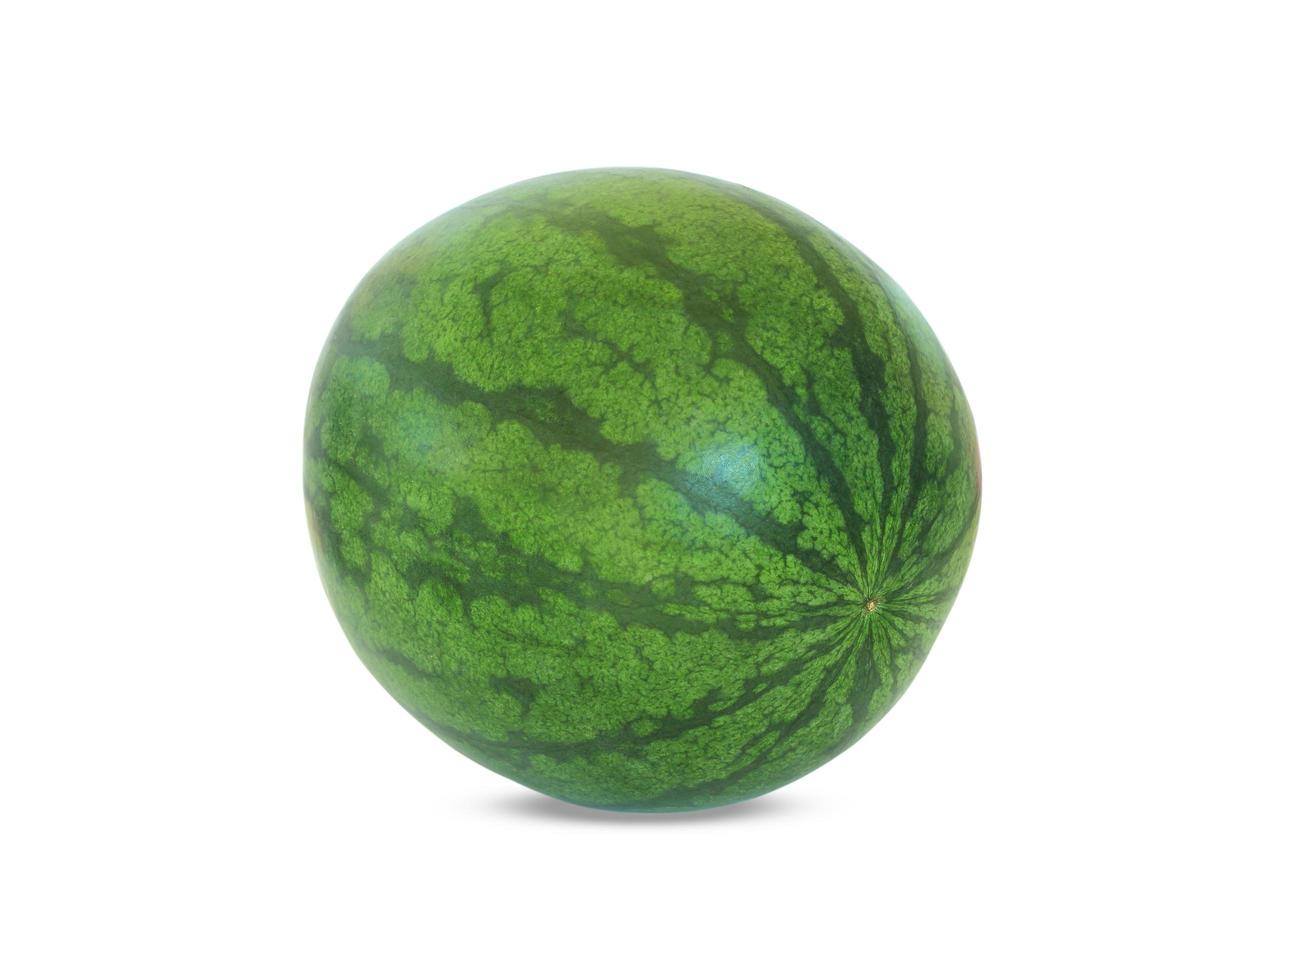 Wassermelone lokalisiert auf weißem Hintergrund foto